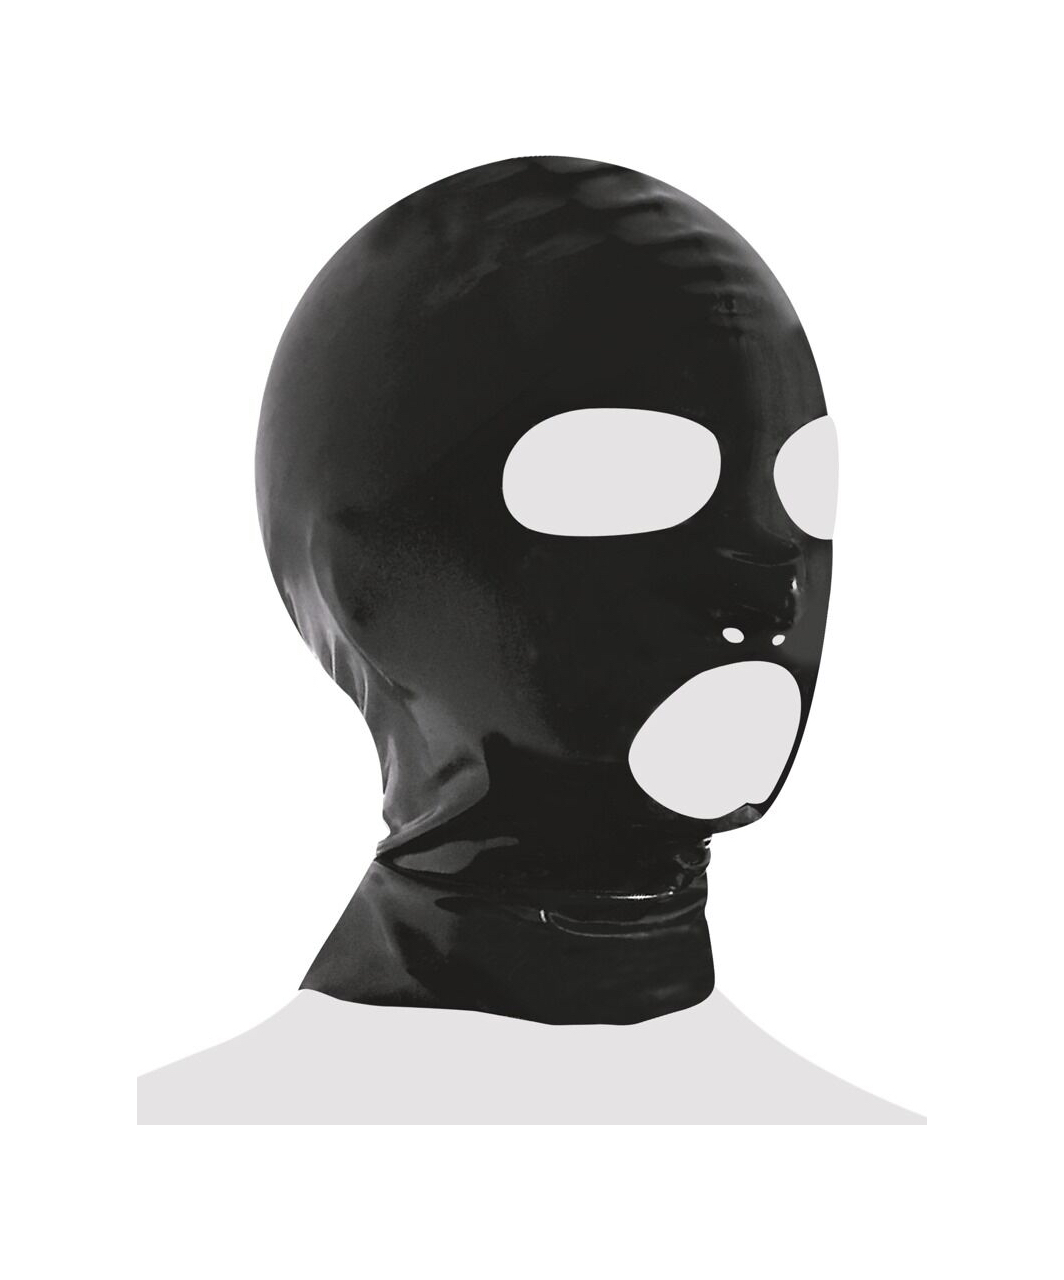 Late X маска из латекса с вырезами